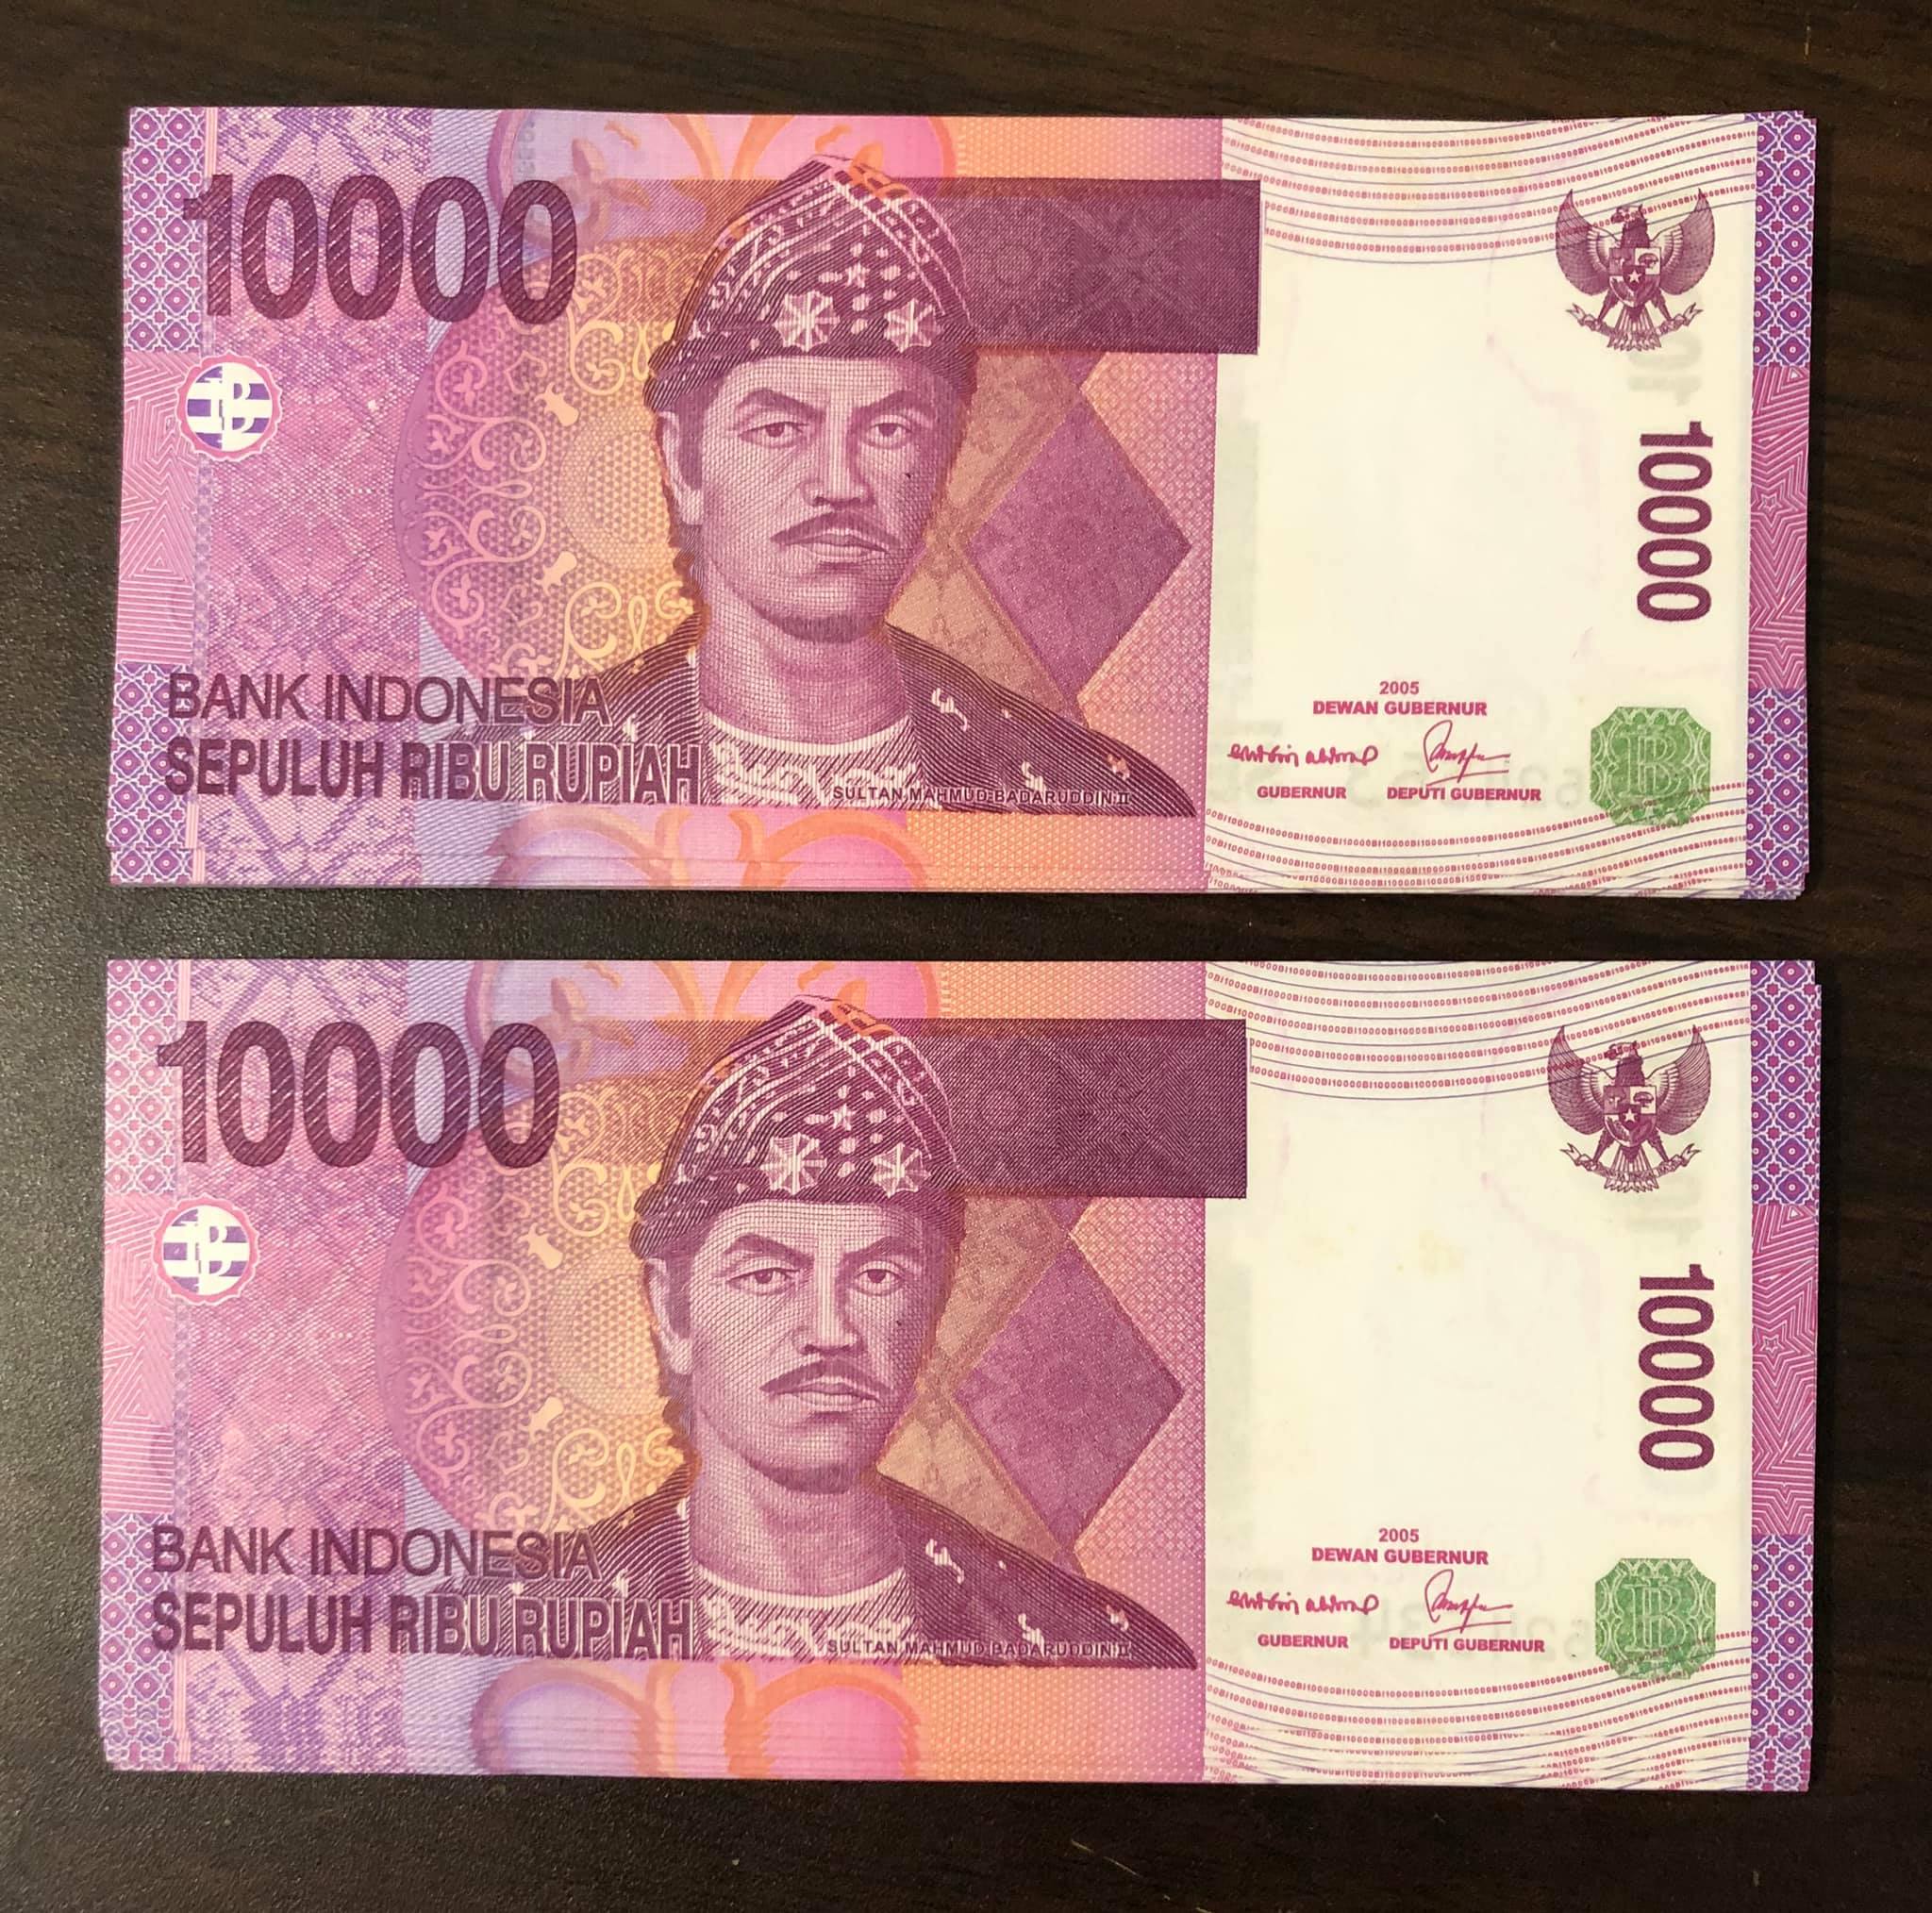 01 tờ tiền cổ 10000 Rupiah Indonesia sưu tầm